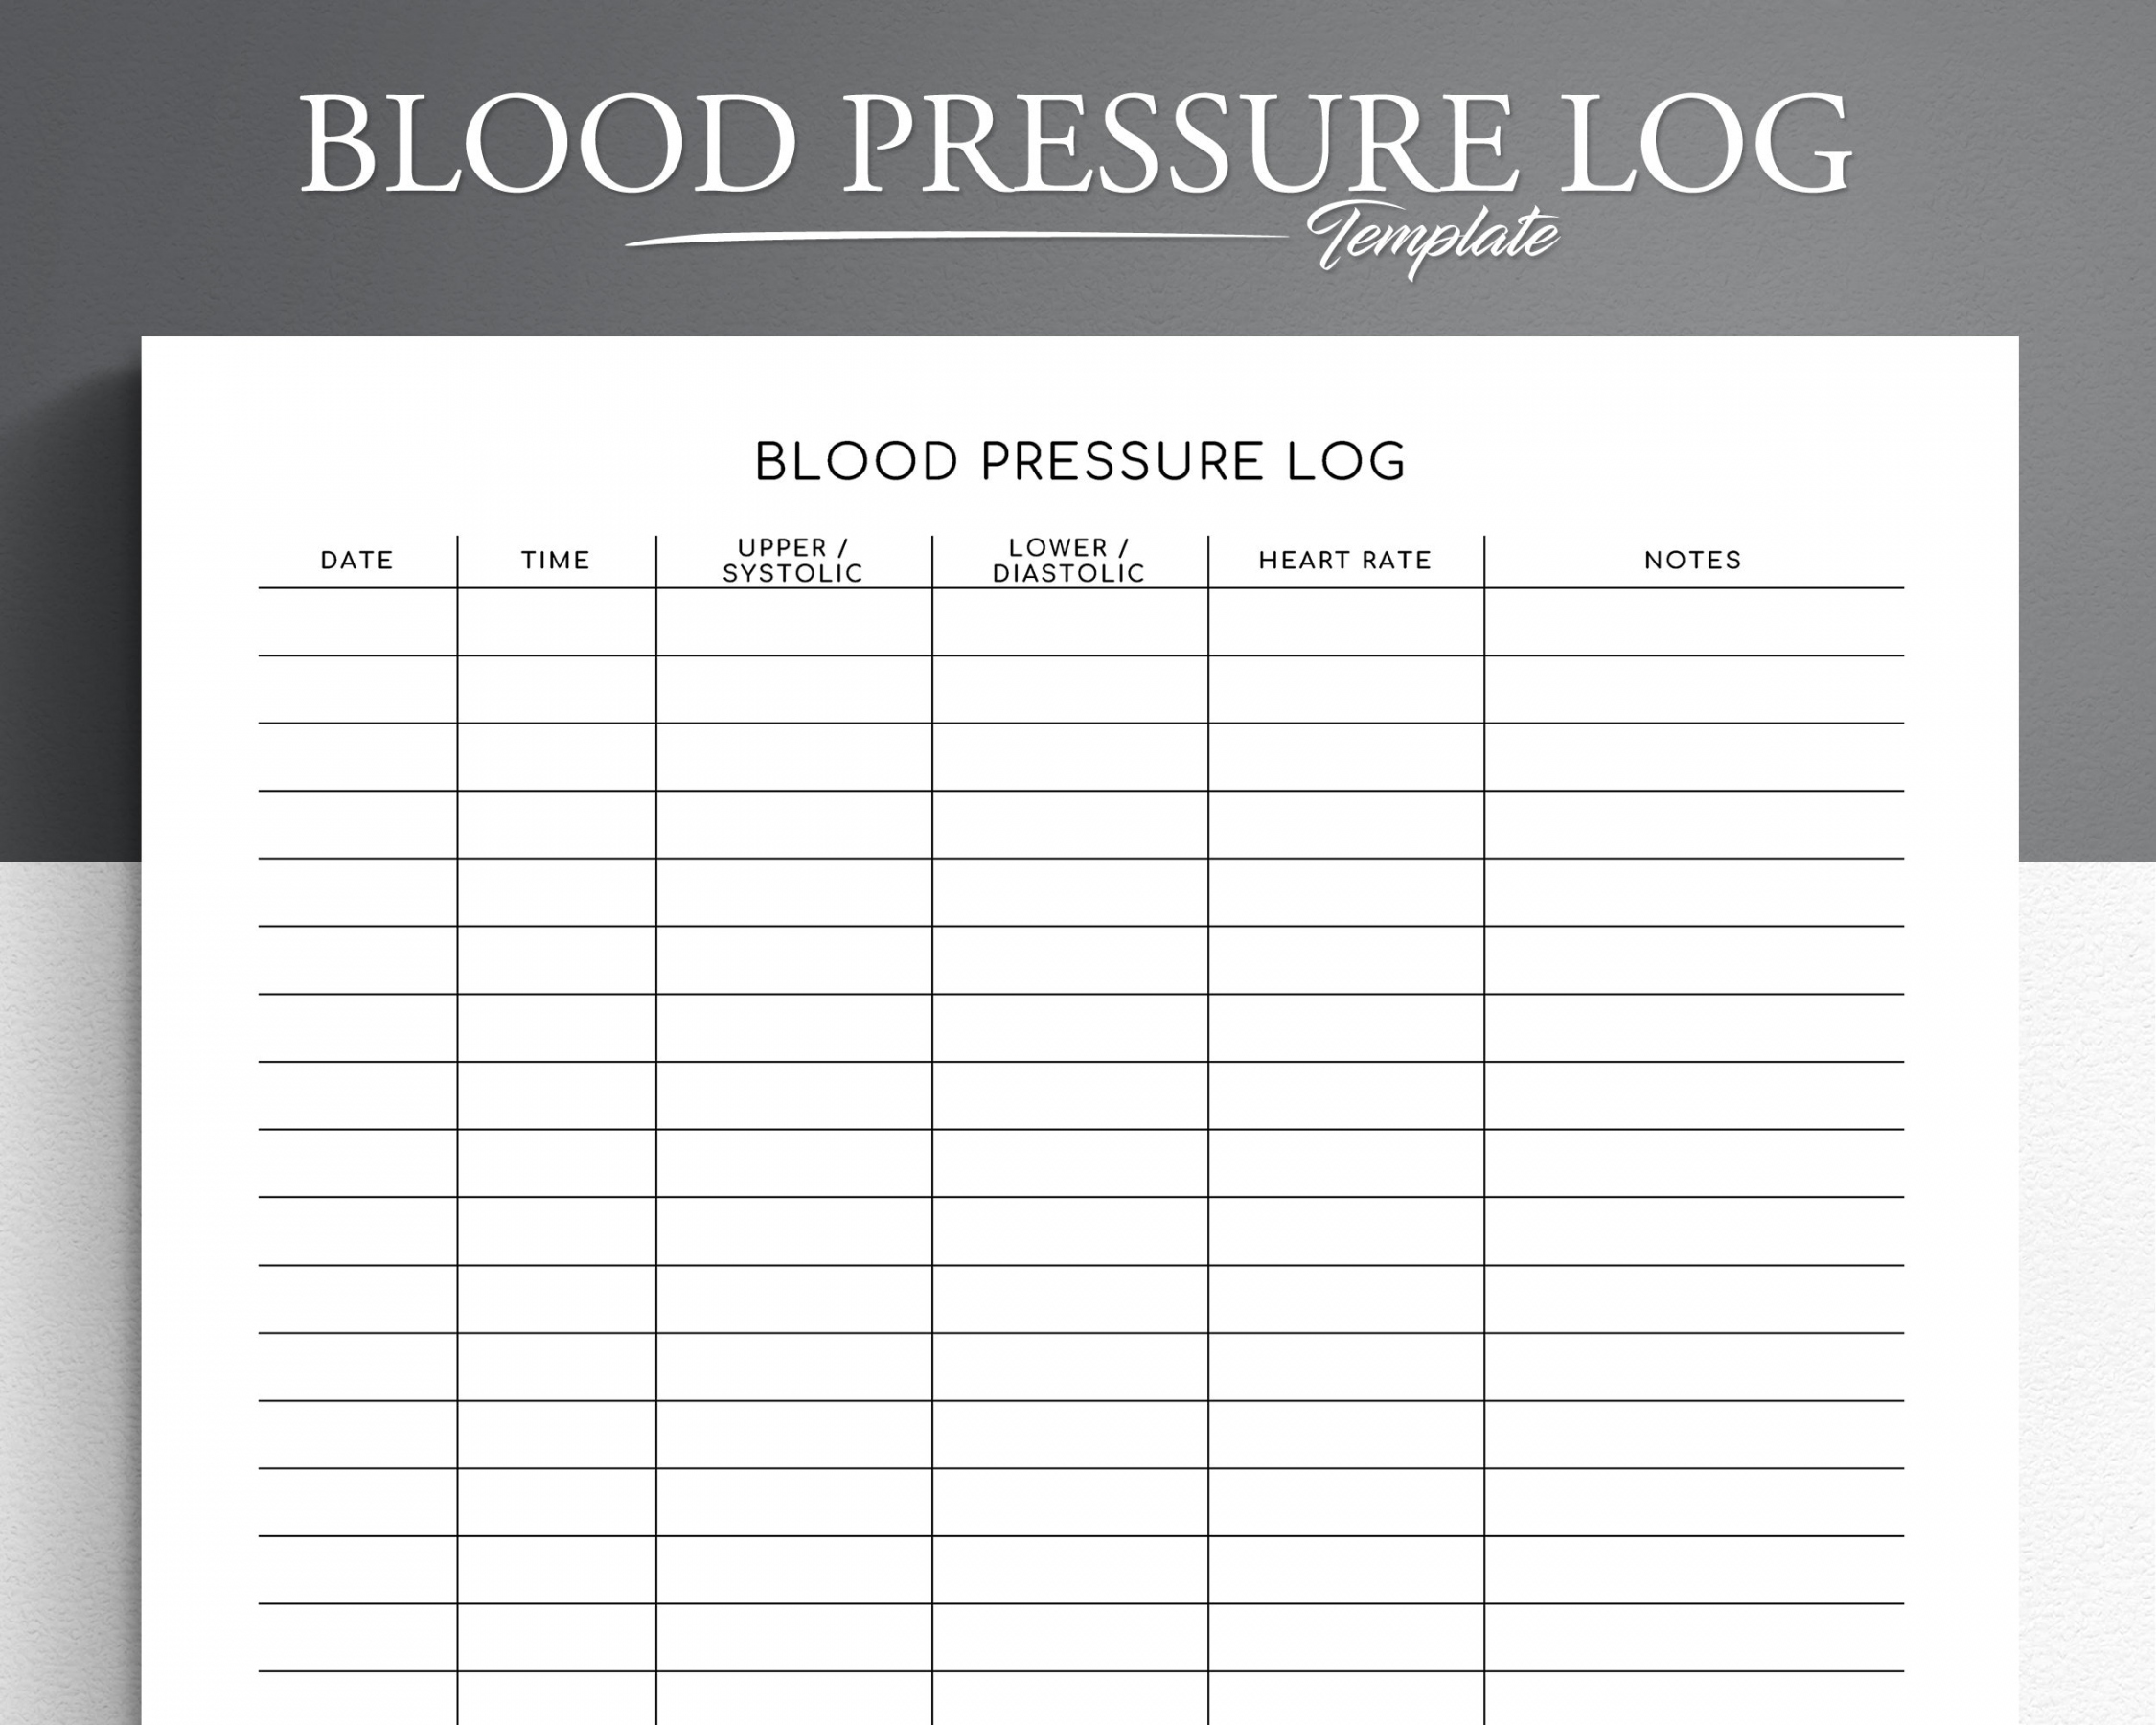 Blood Pressure Log Printable Free - Printable - Blood Pressure Log Editable Printable